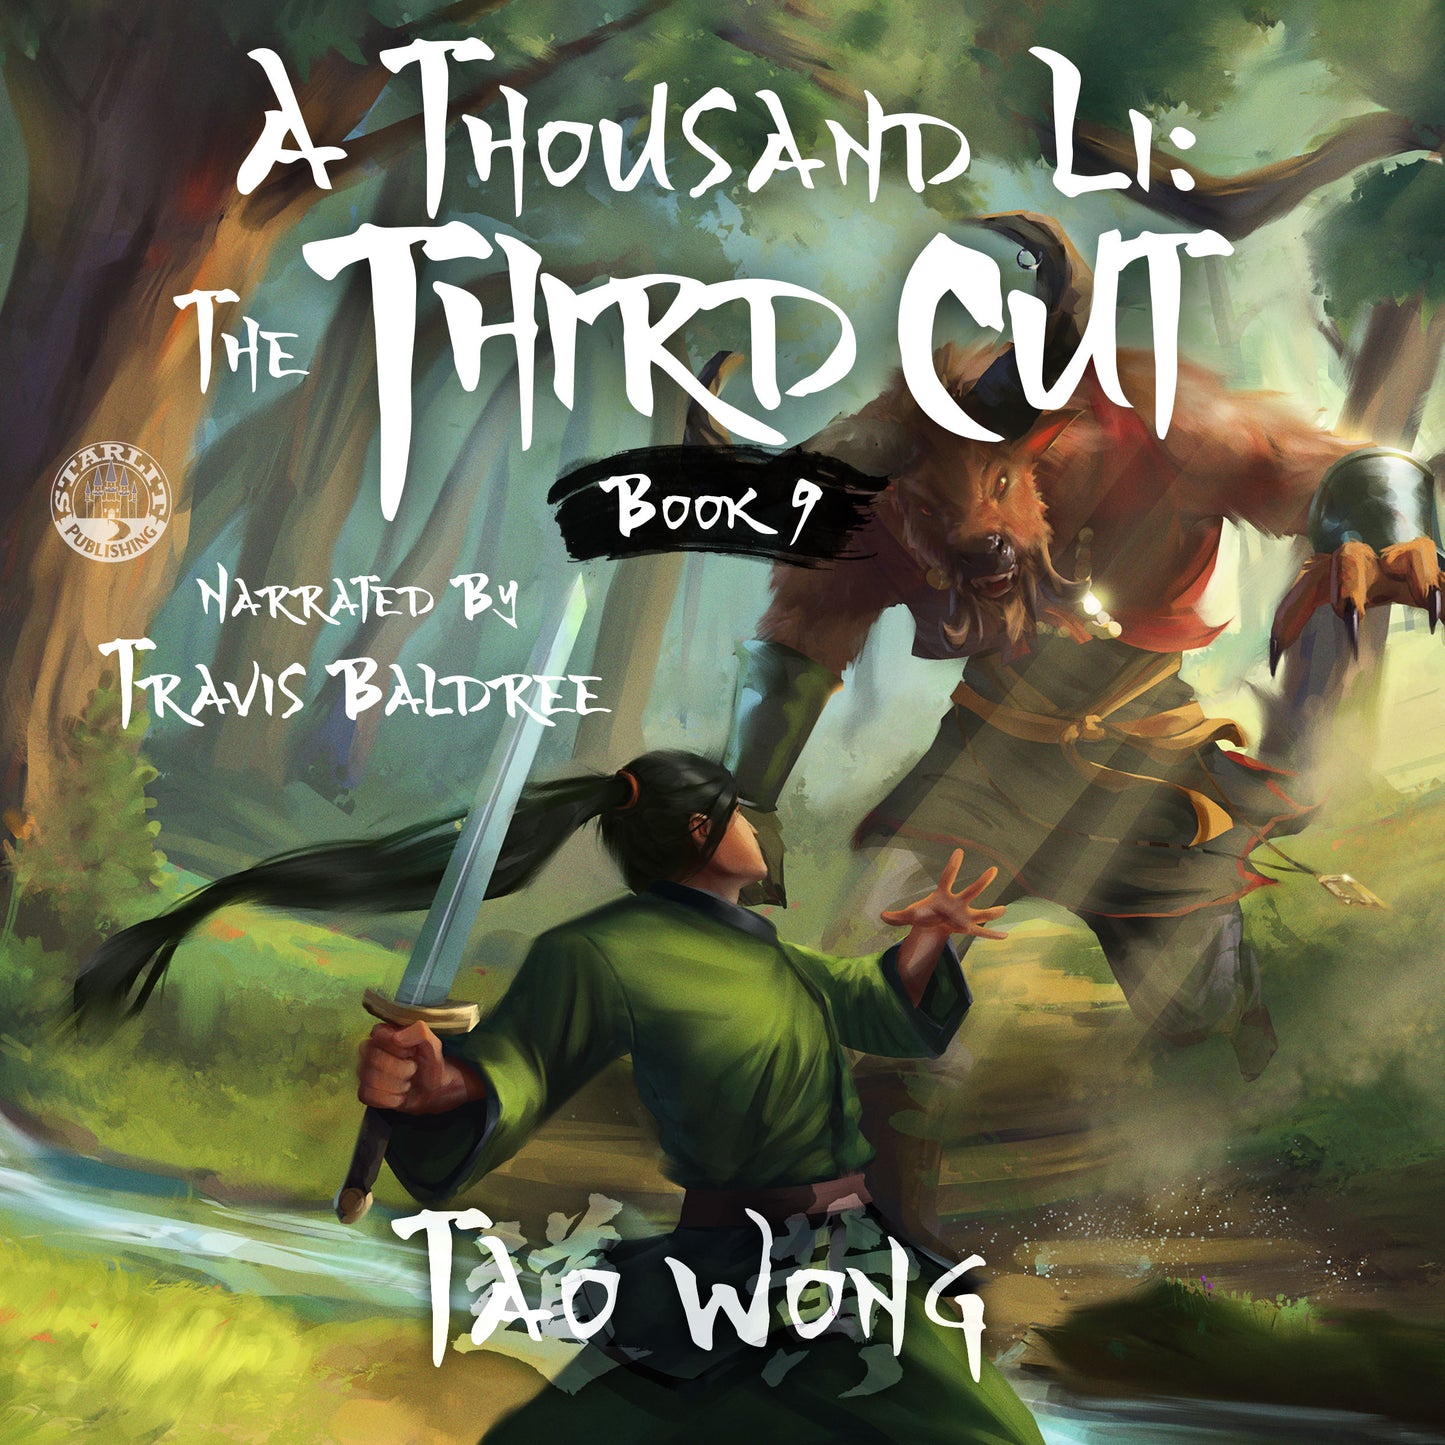 The Third Cut (A Thousand Li #9)